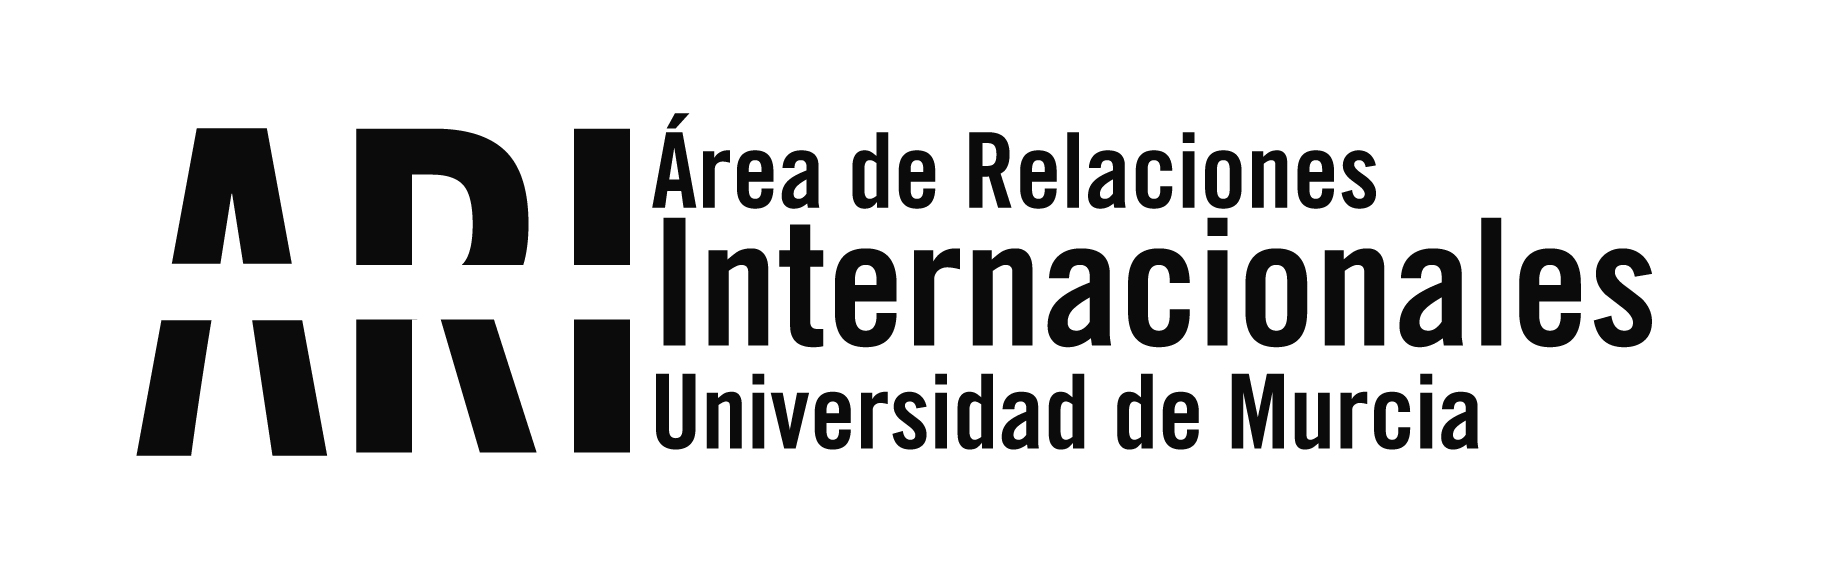 Boletín informativo de Internacionalización 3/2022 - Boletín informativo de Internacionalización 3/2022 - Área de Relaciones Internacionales